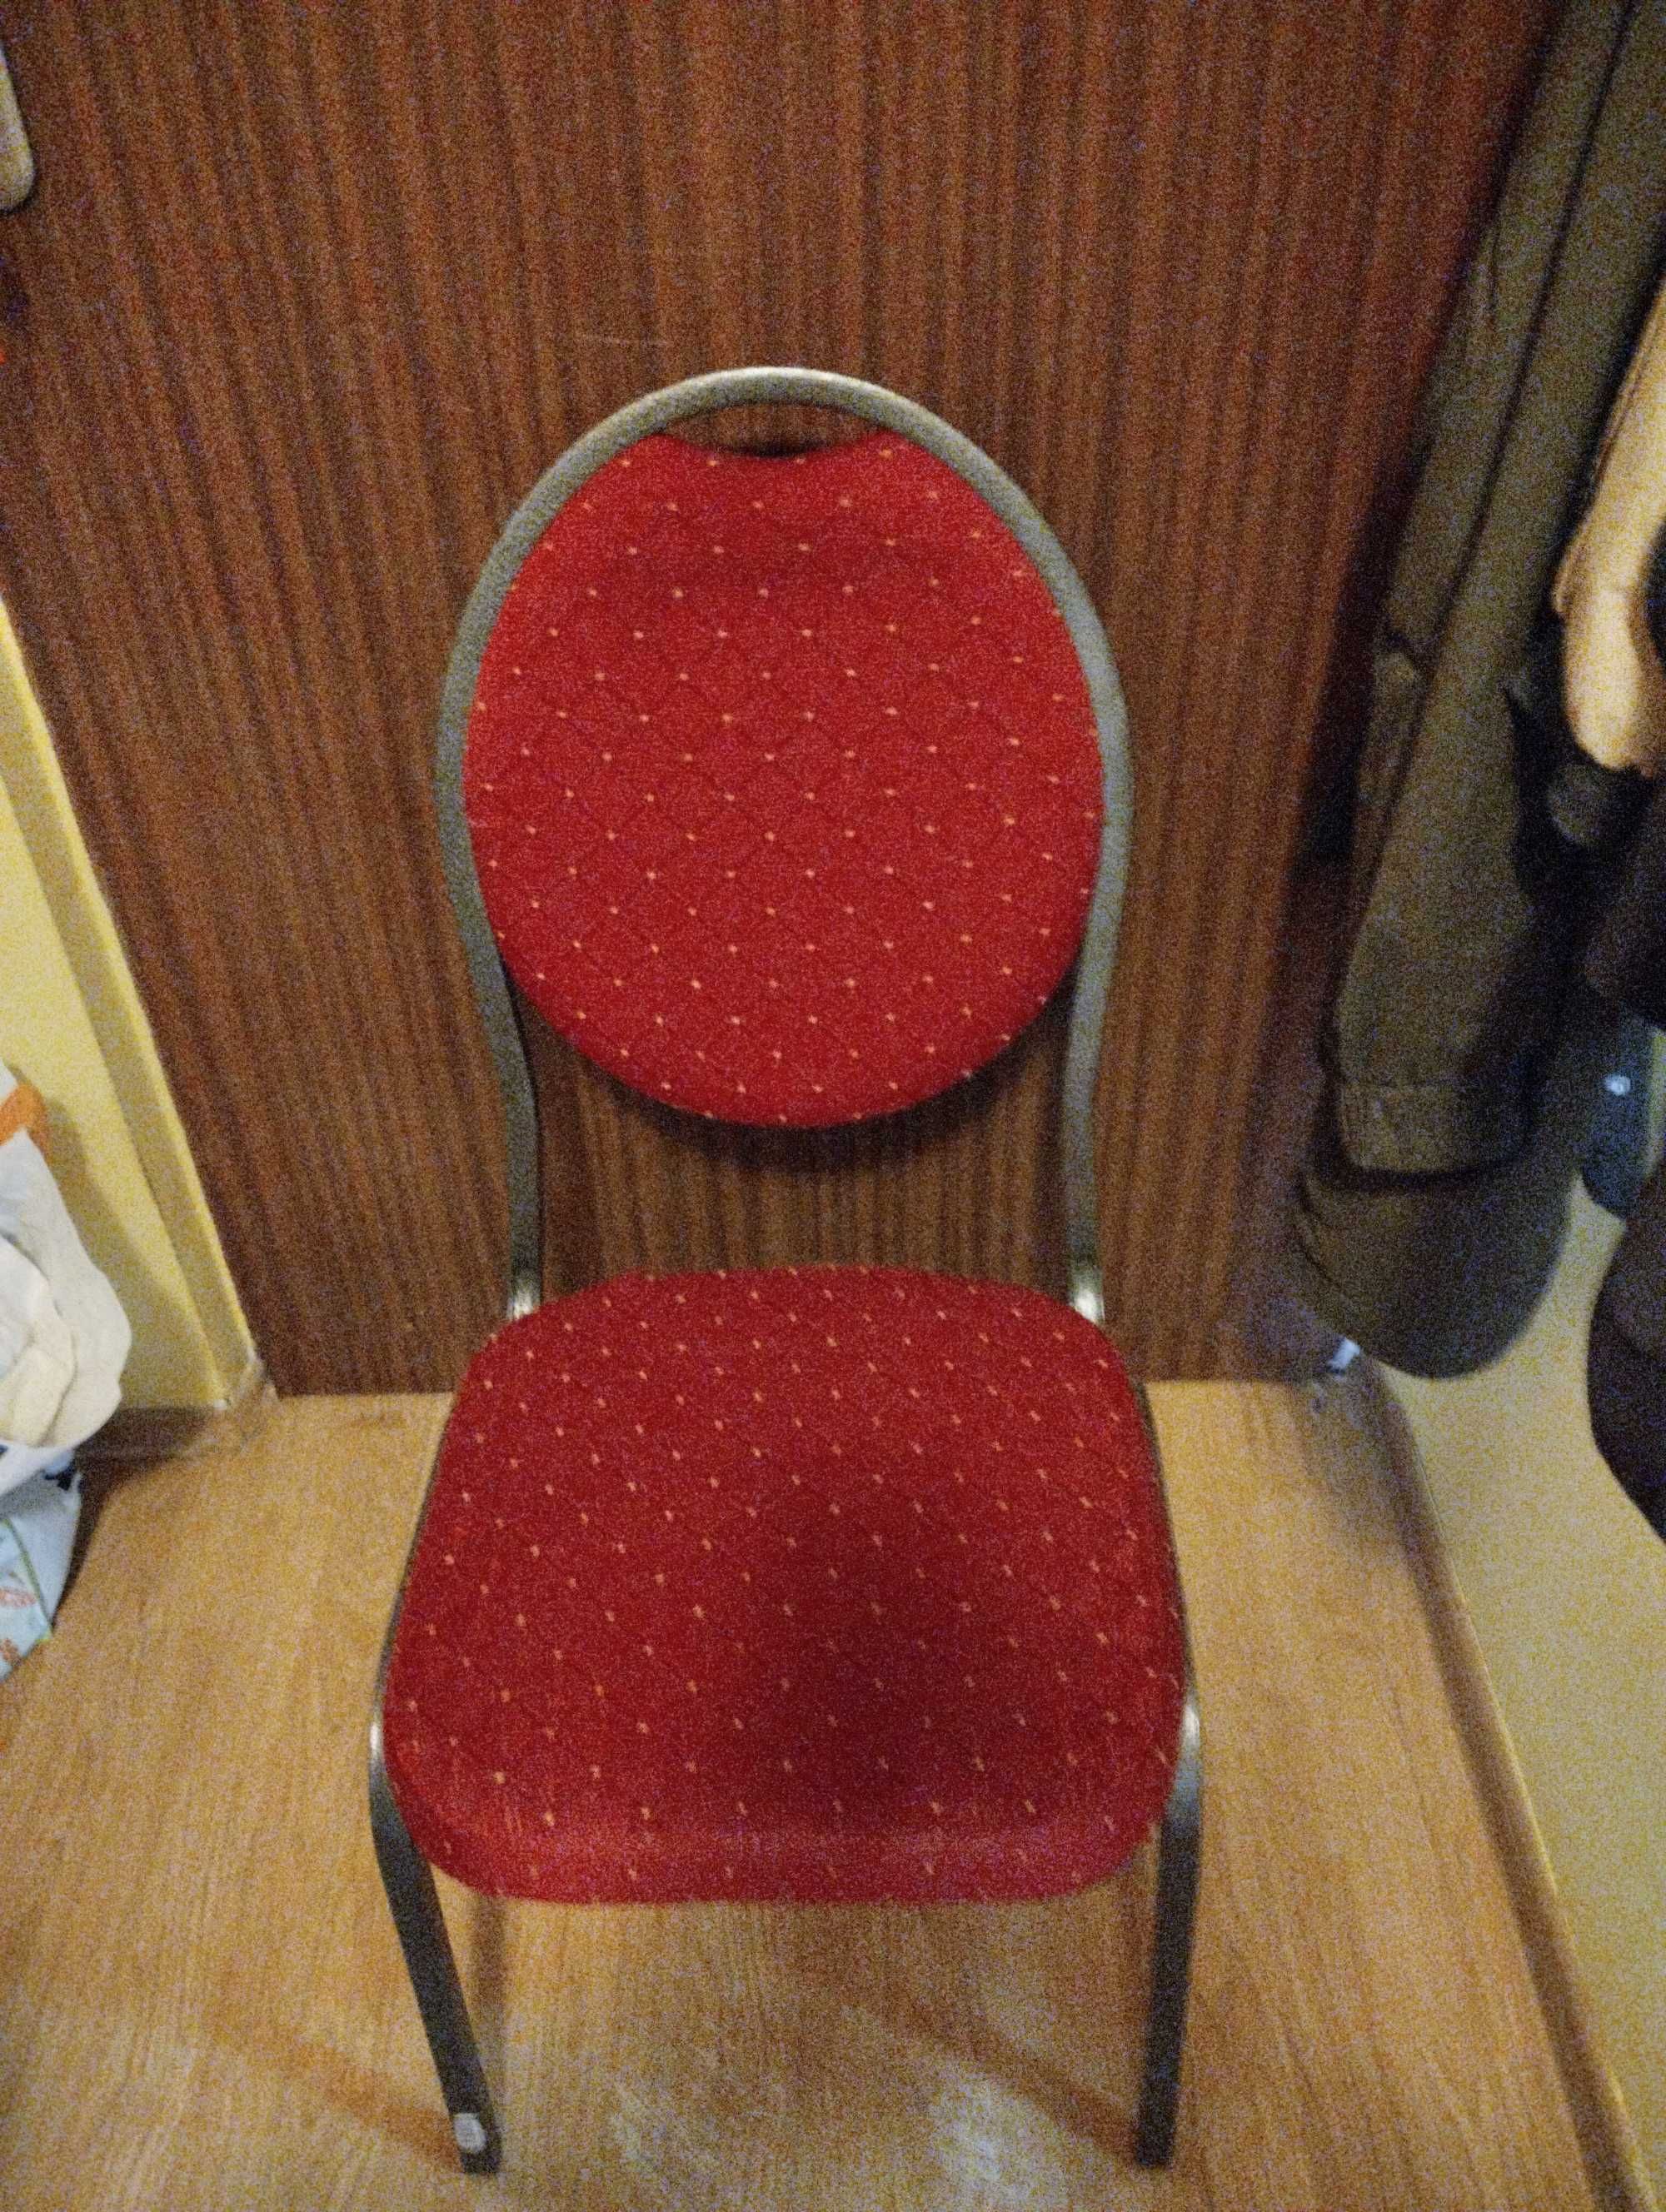 Krzesło metalowe